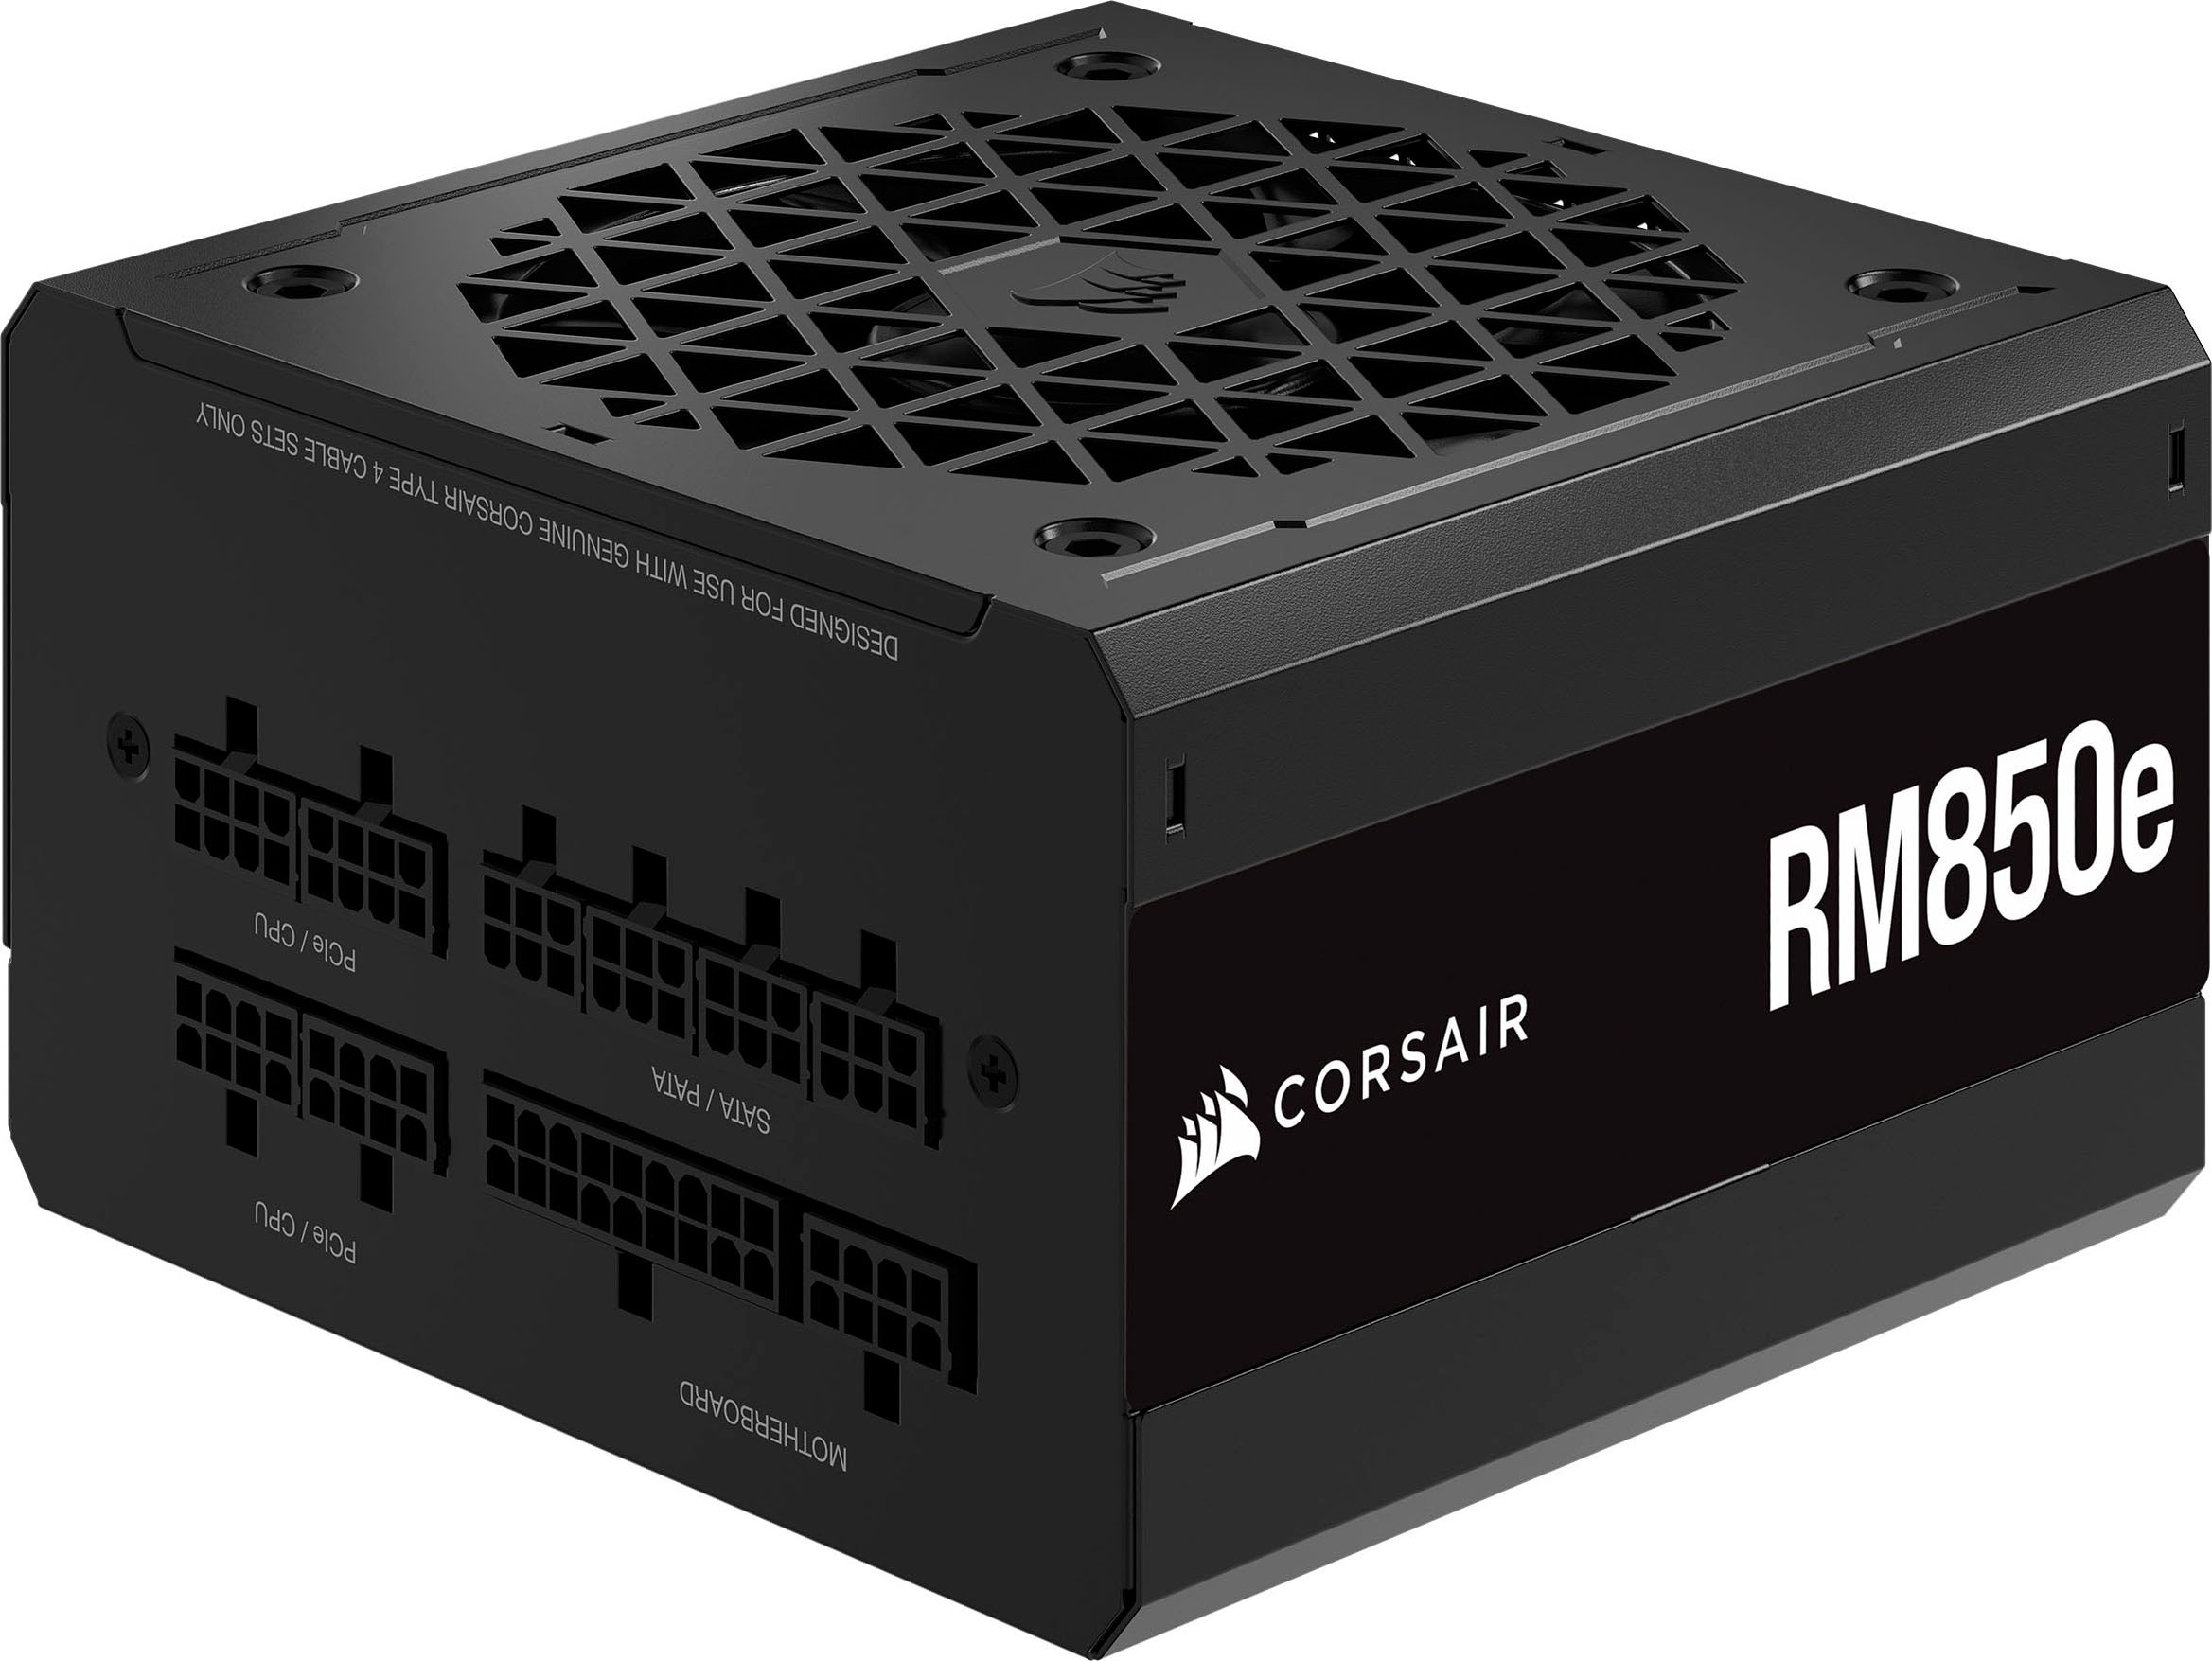 Corsair PC-Netzteil »RM850e«